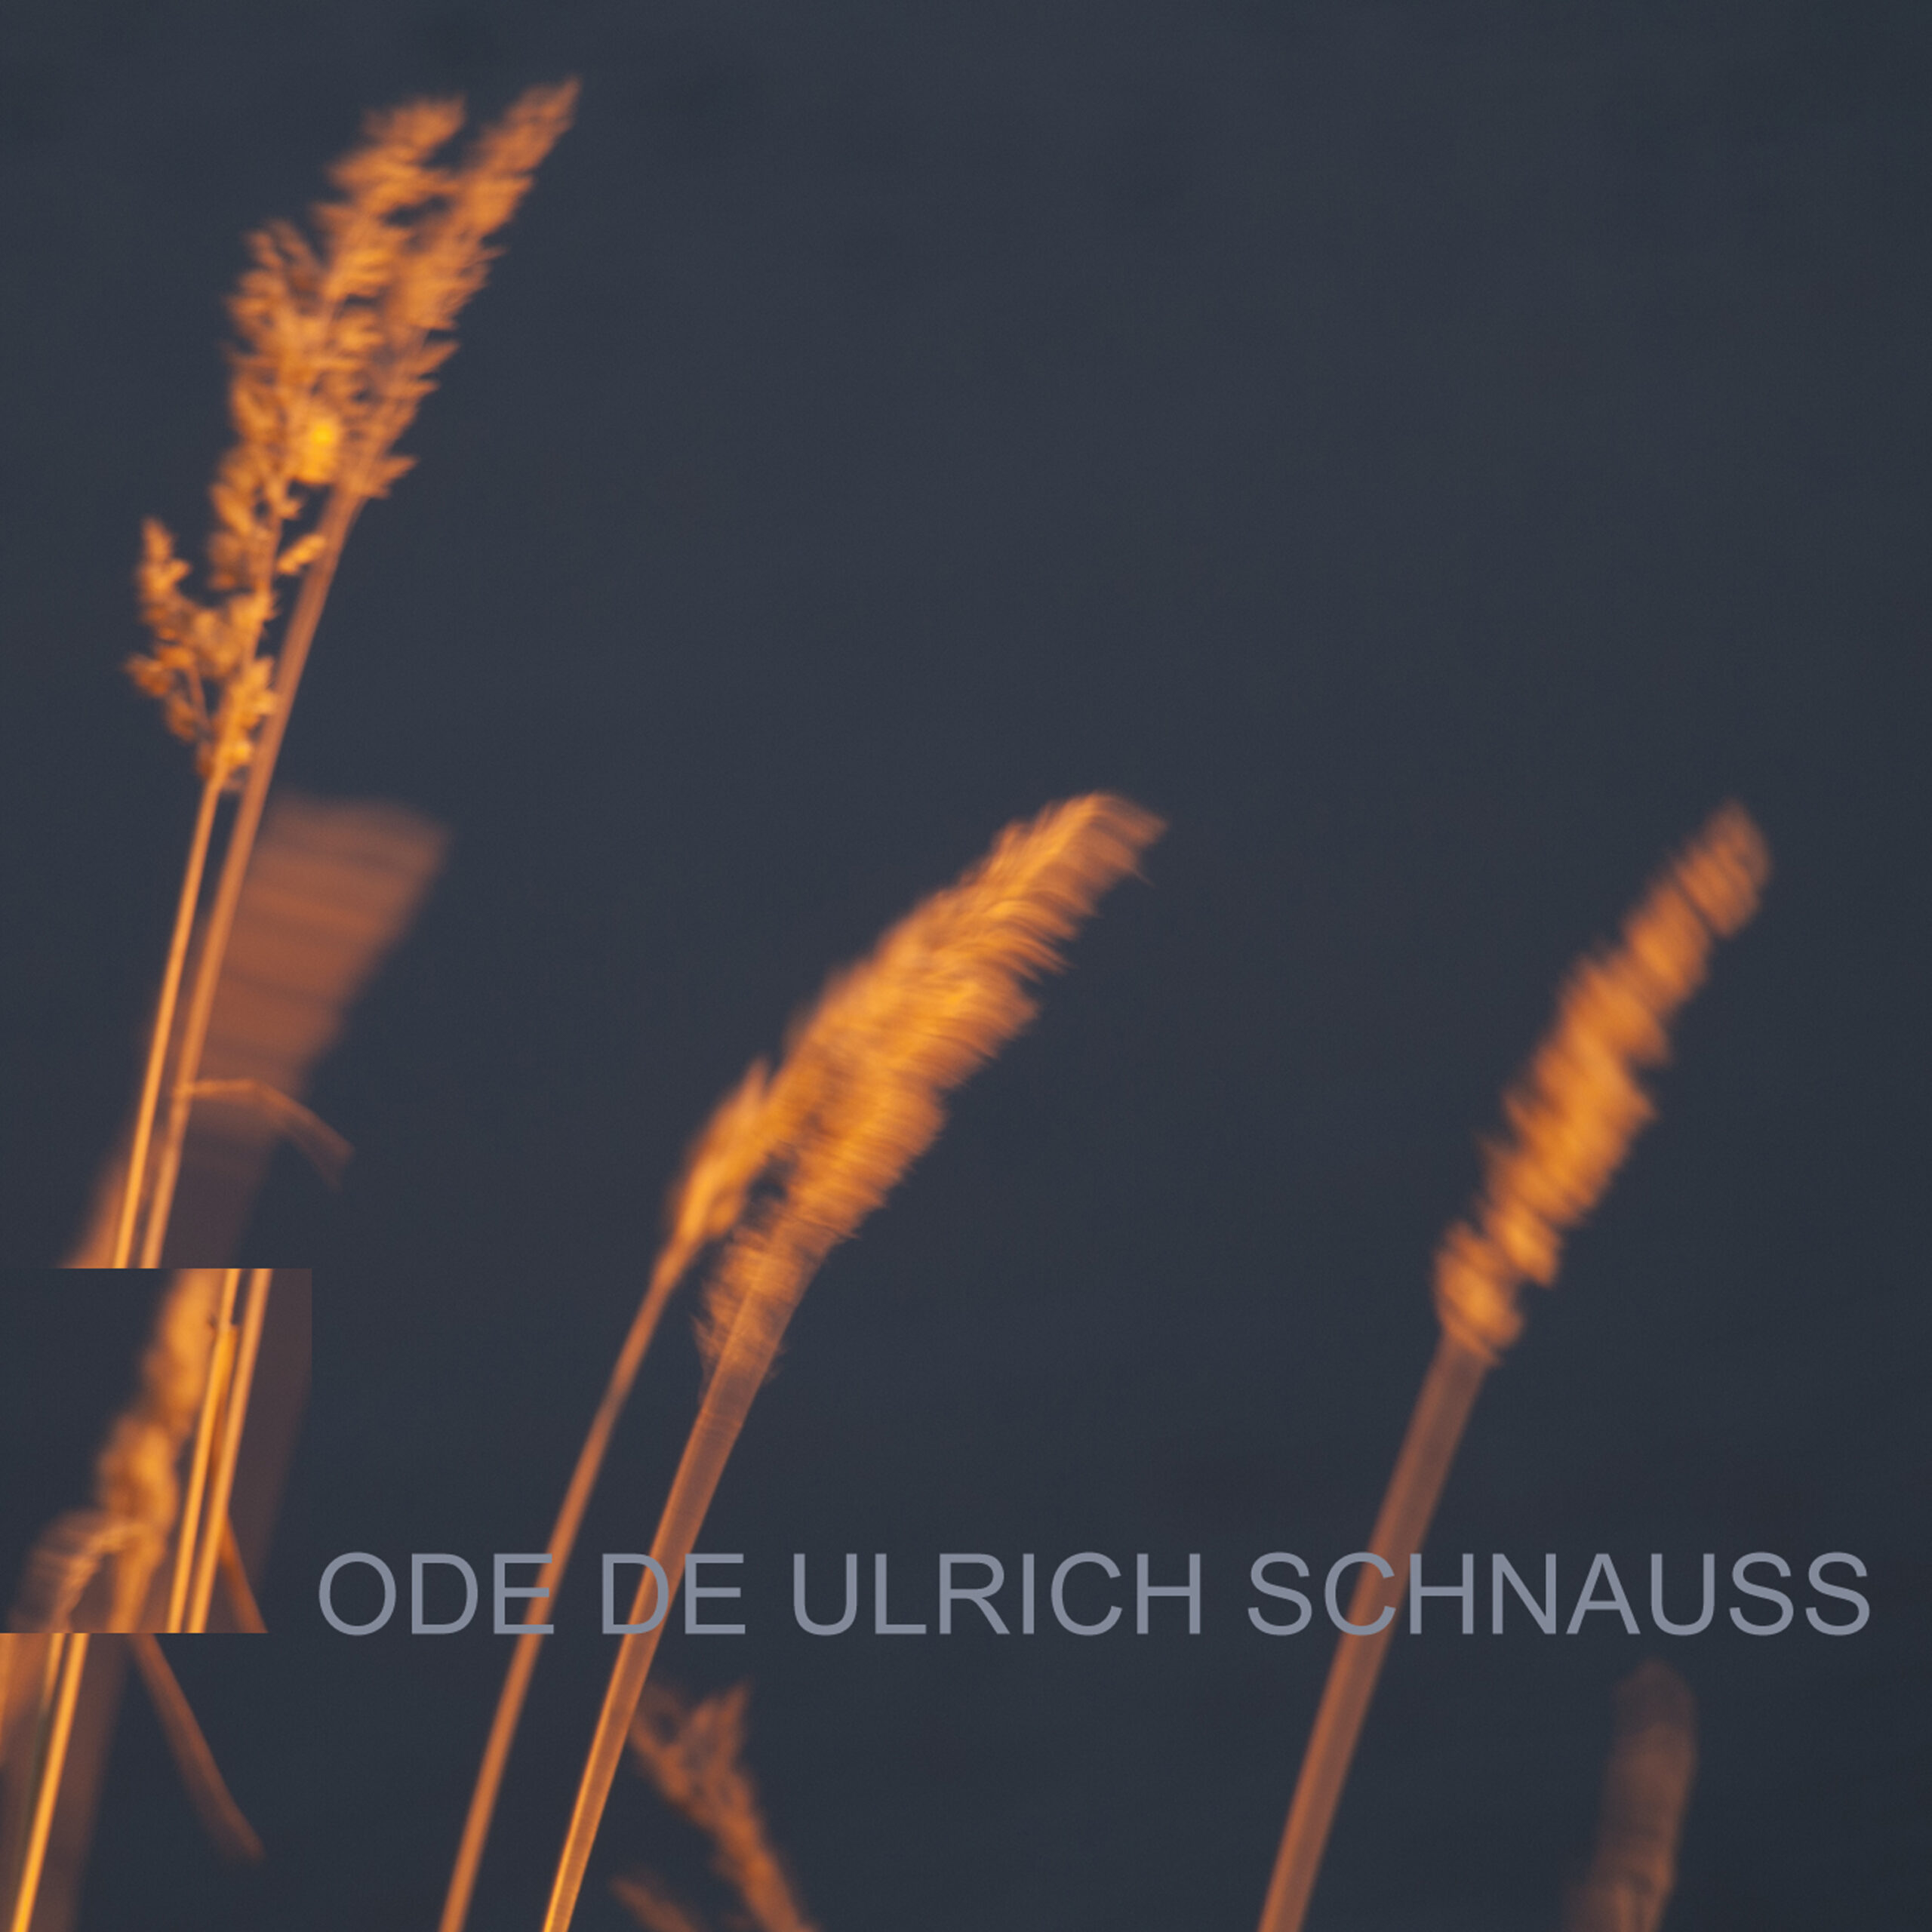 Ode de Ulrich Schnauss